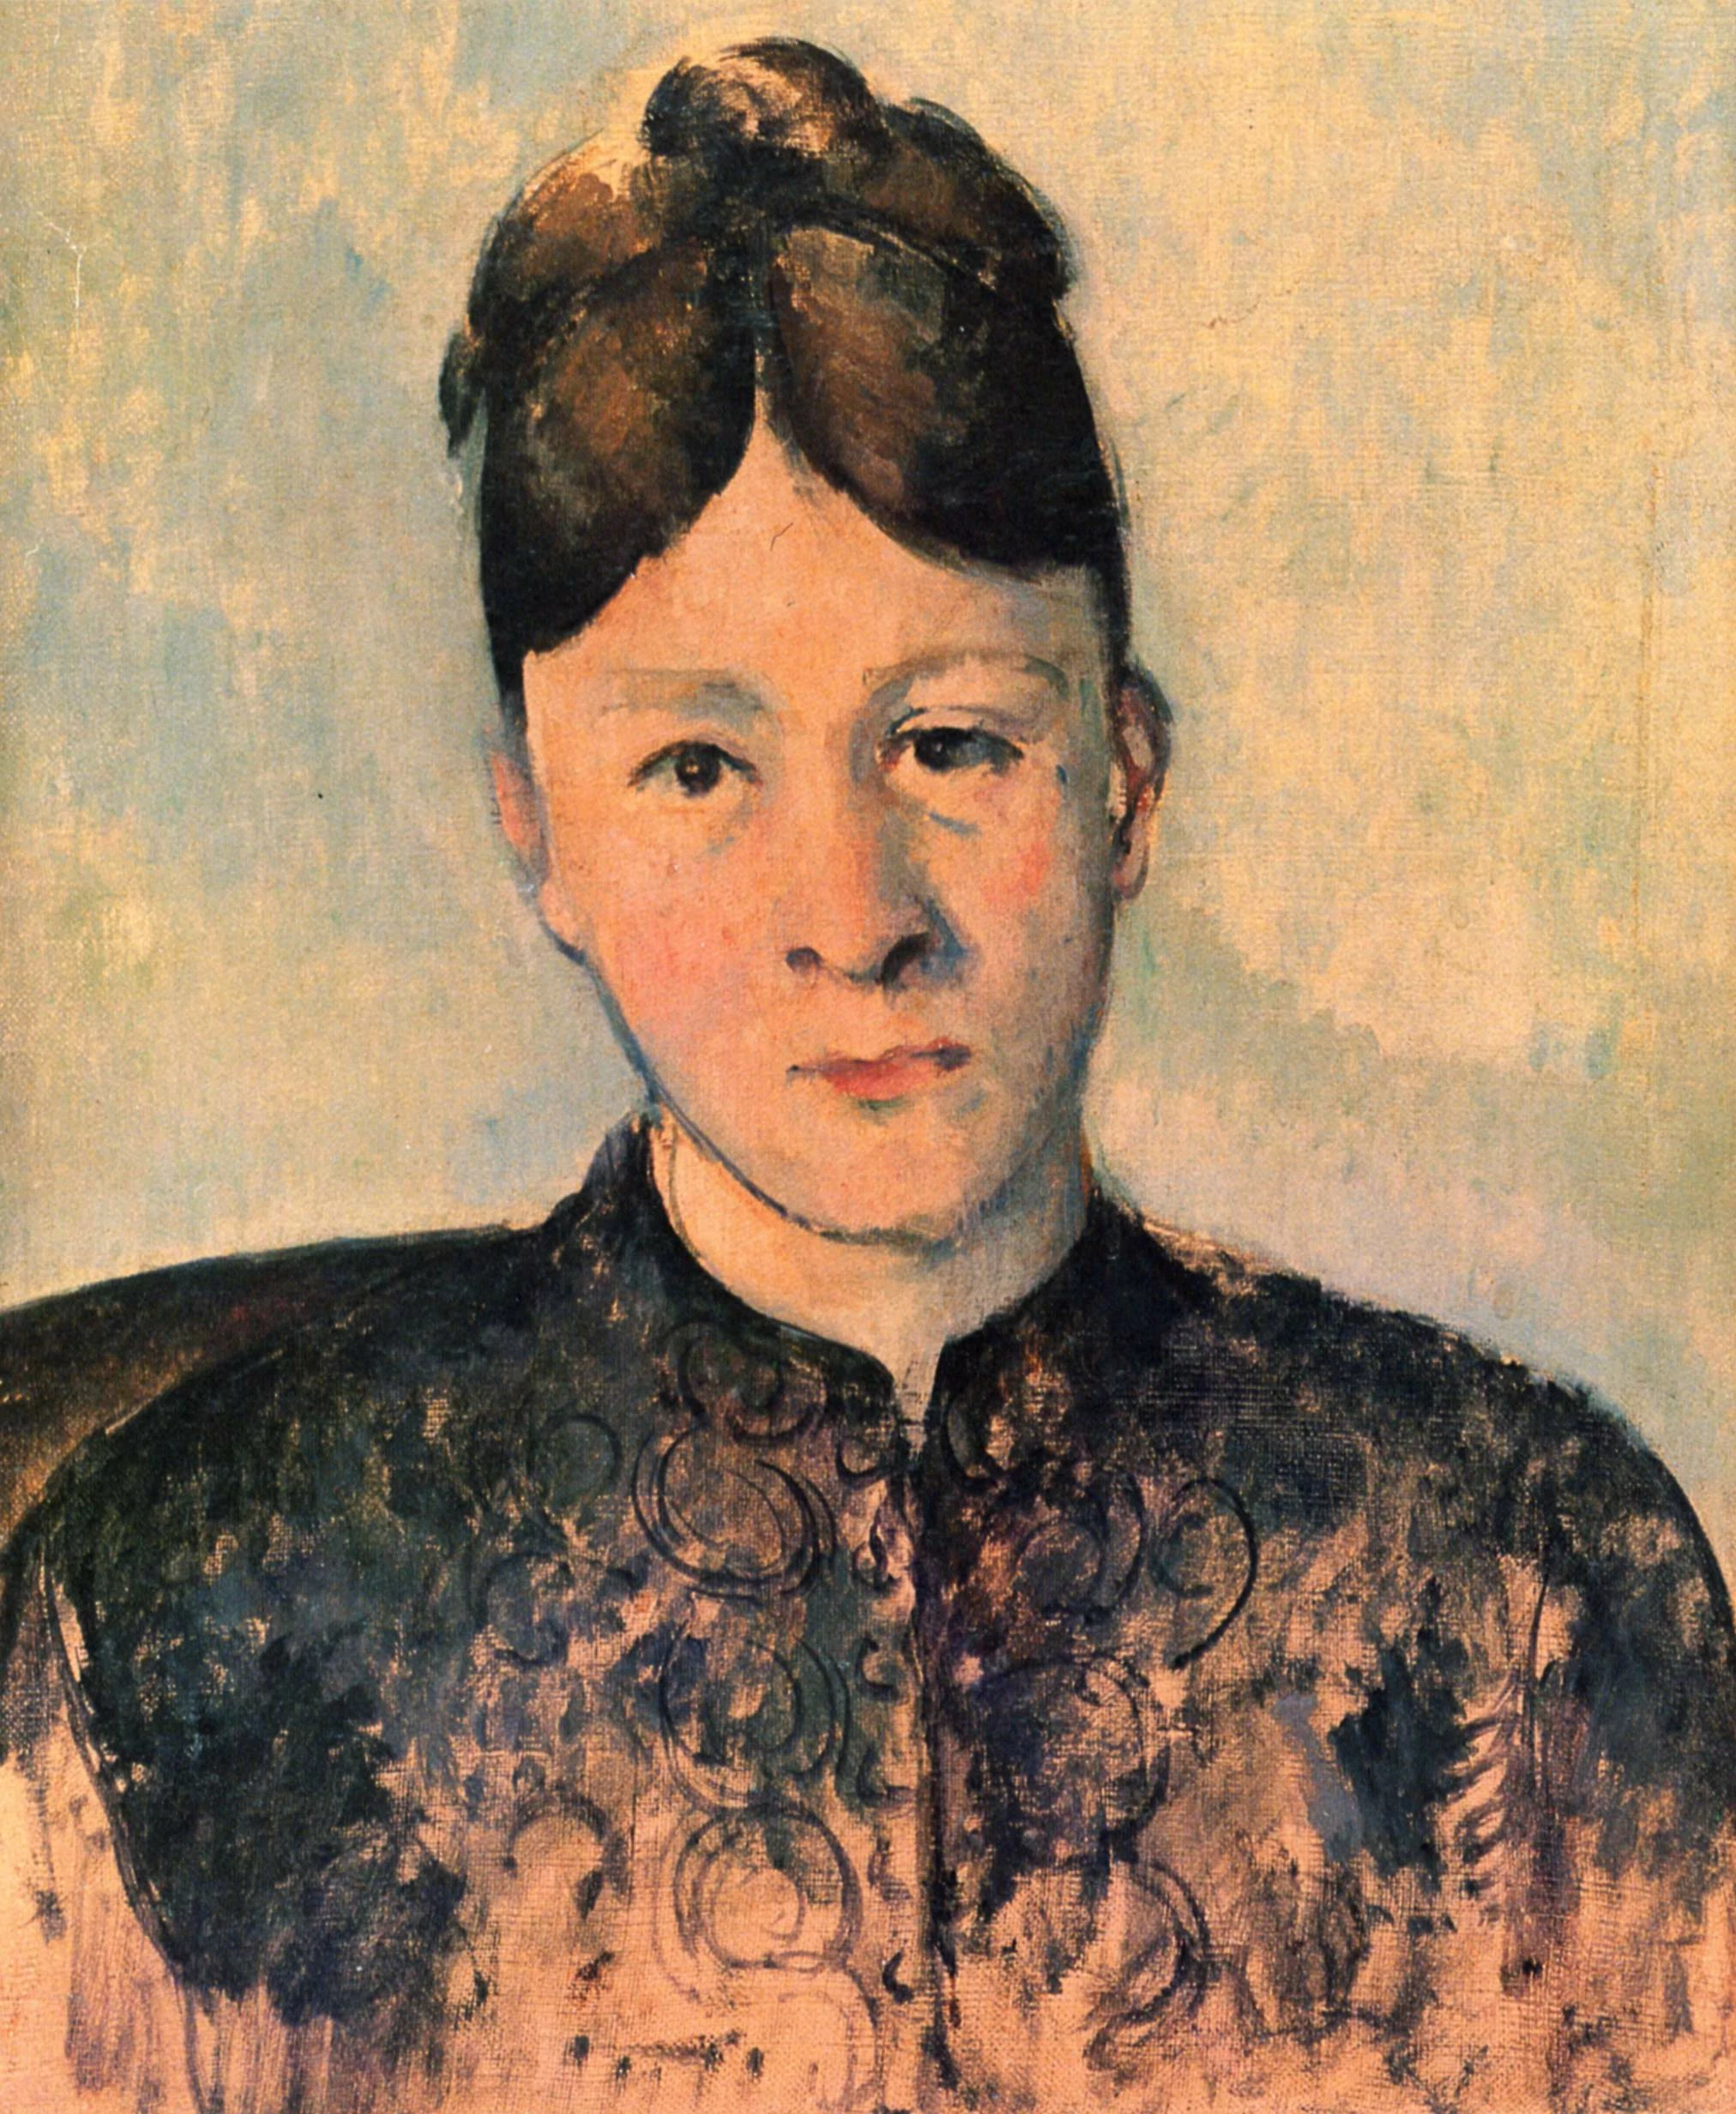 Portrait of Madame Cezanne, Paul Cézanne